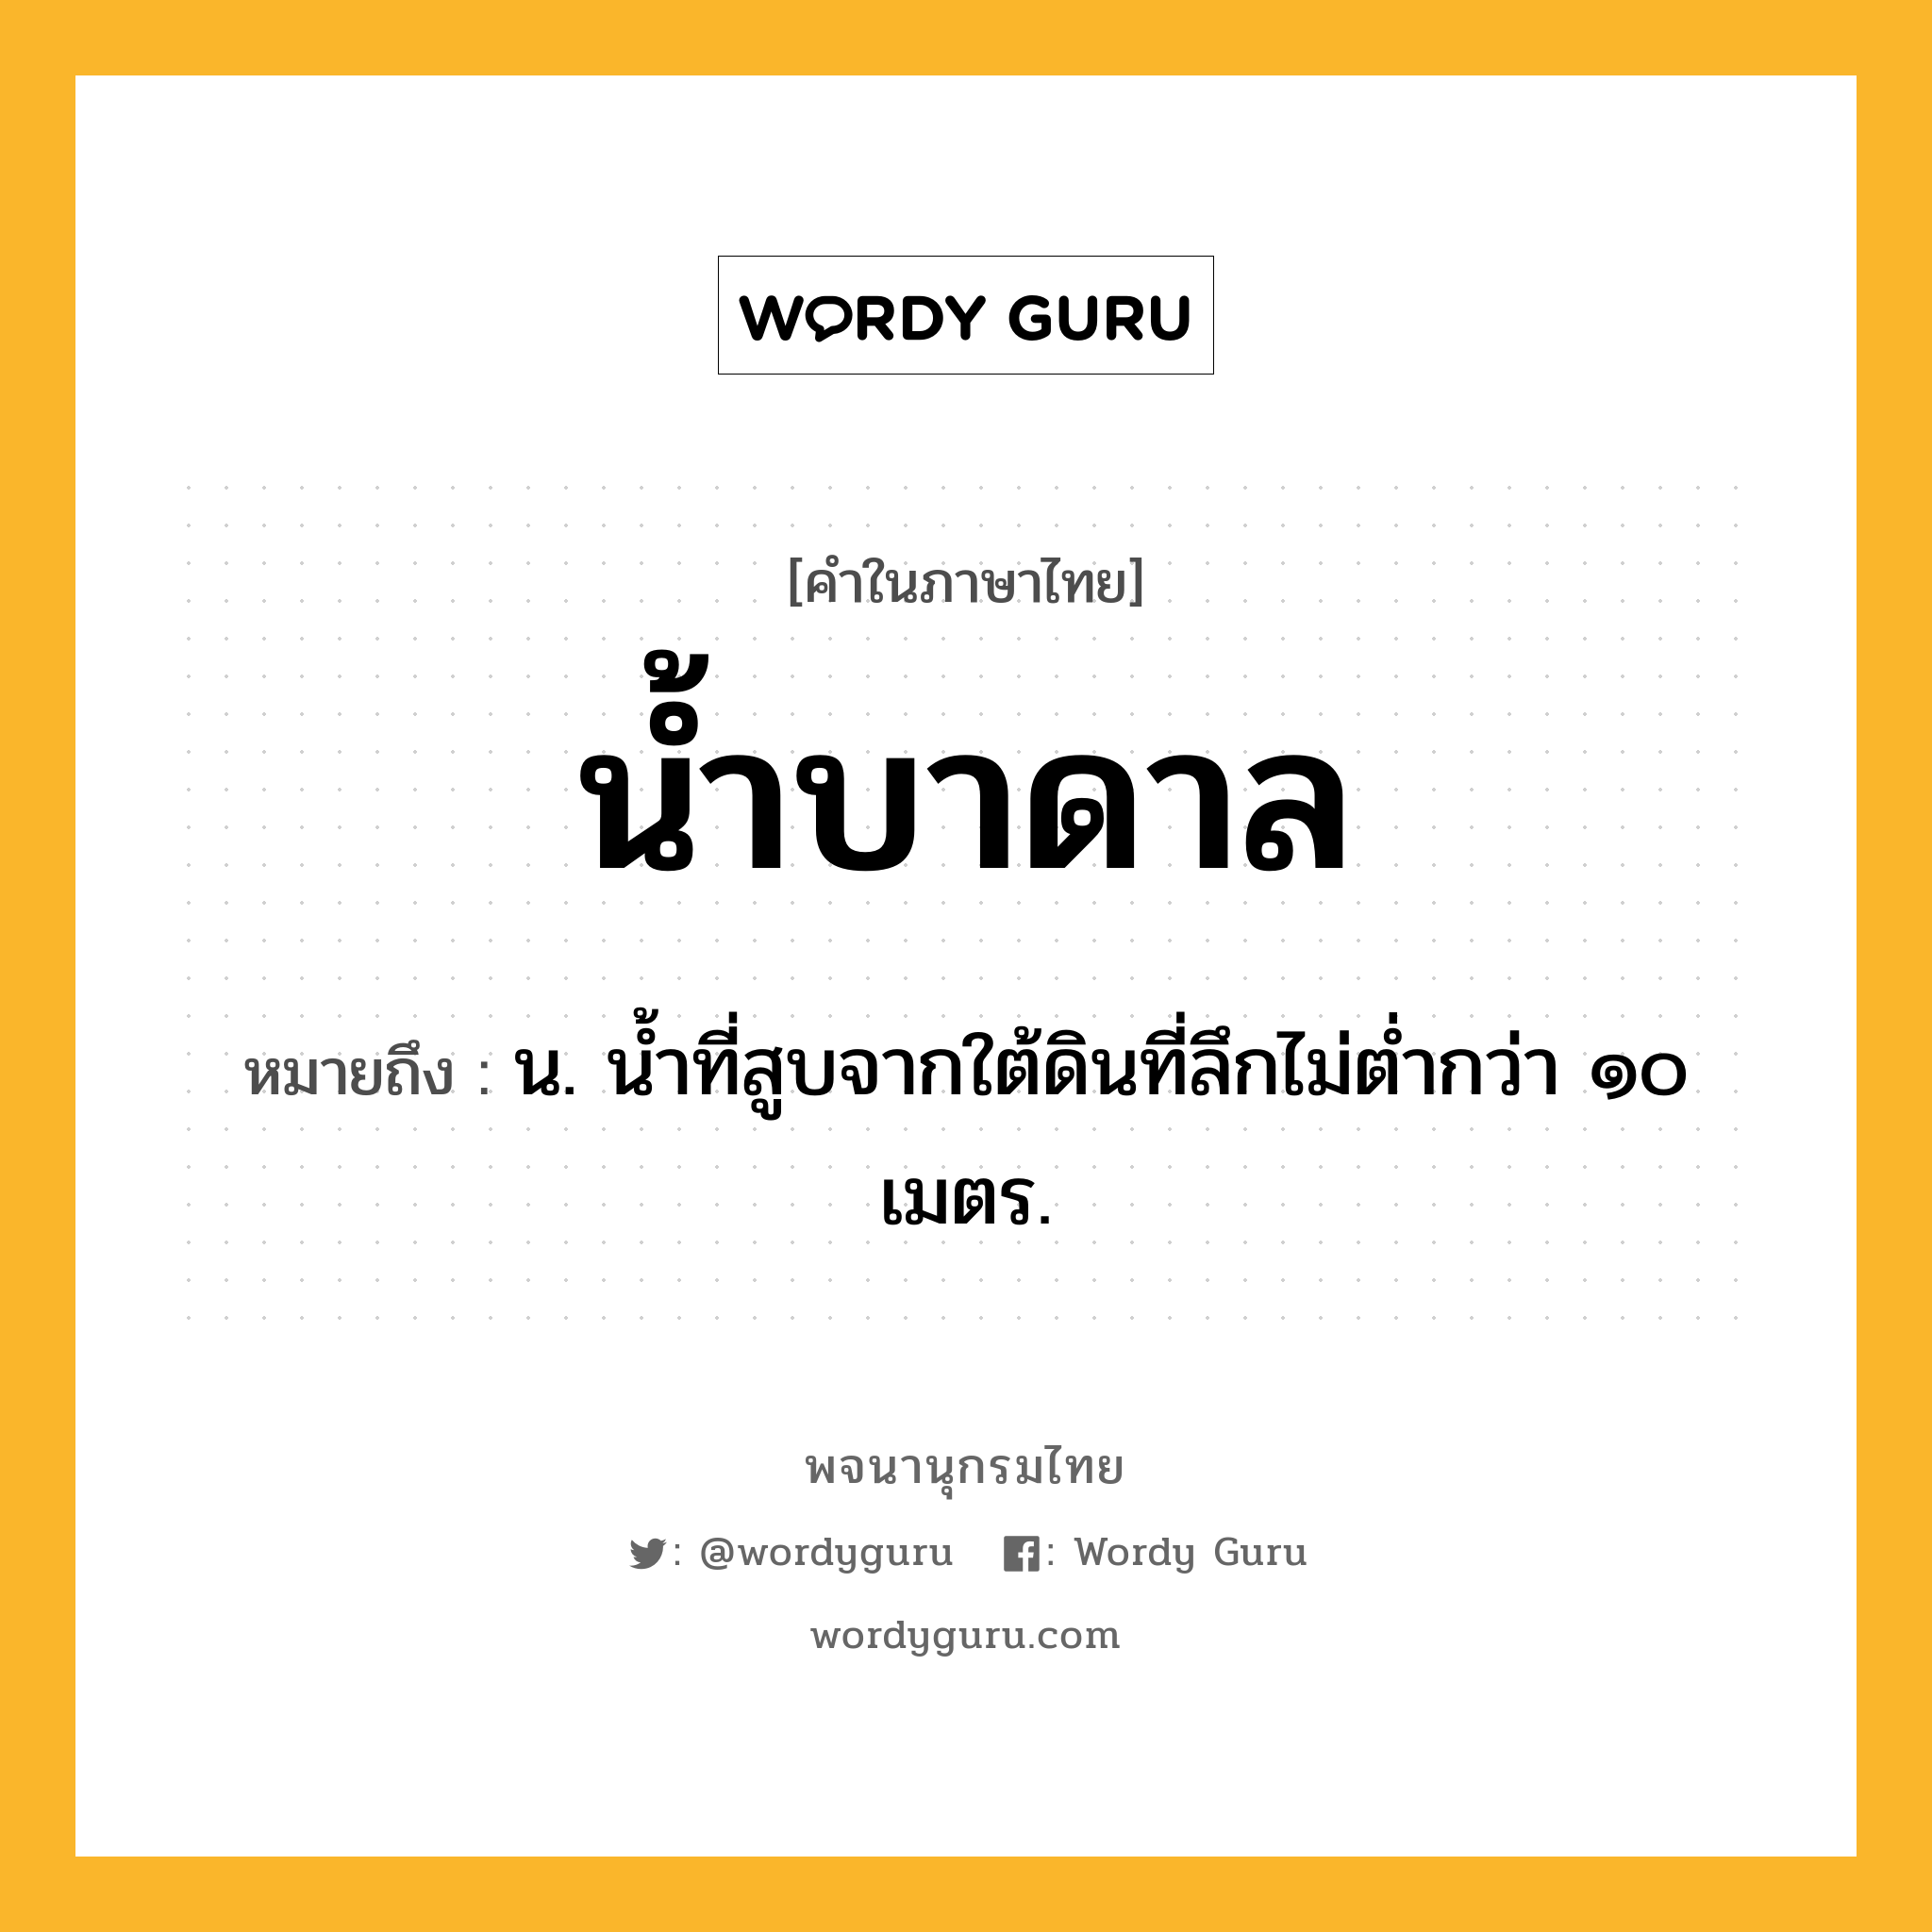 น้ำบาดาล ความหมาย หมายถึงอะไร?, คำในภาษาไทย น้ำบาดาล หมายถึง น. น้ำที่สูบจากใต้ดินที่ลึกไม่ต่ำกว่า ๑๐ เมตร.